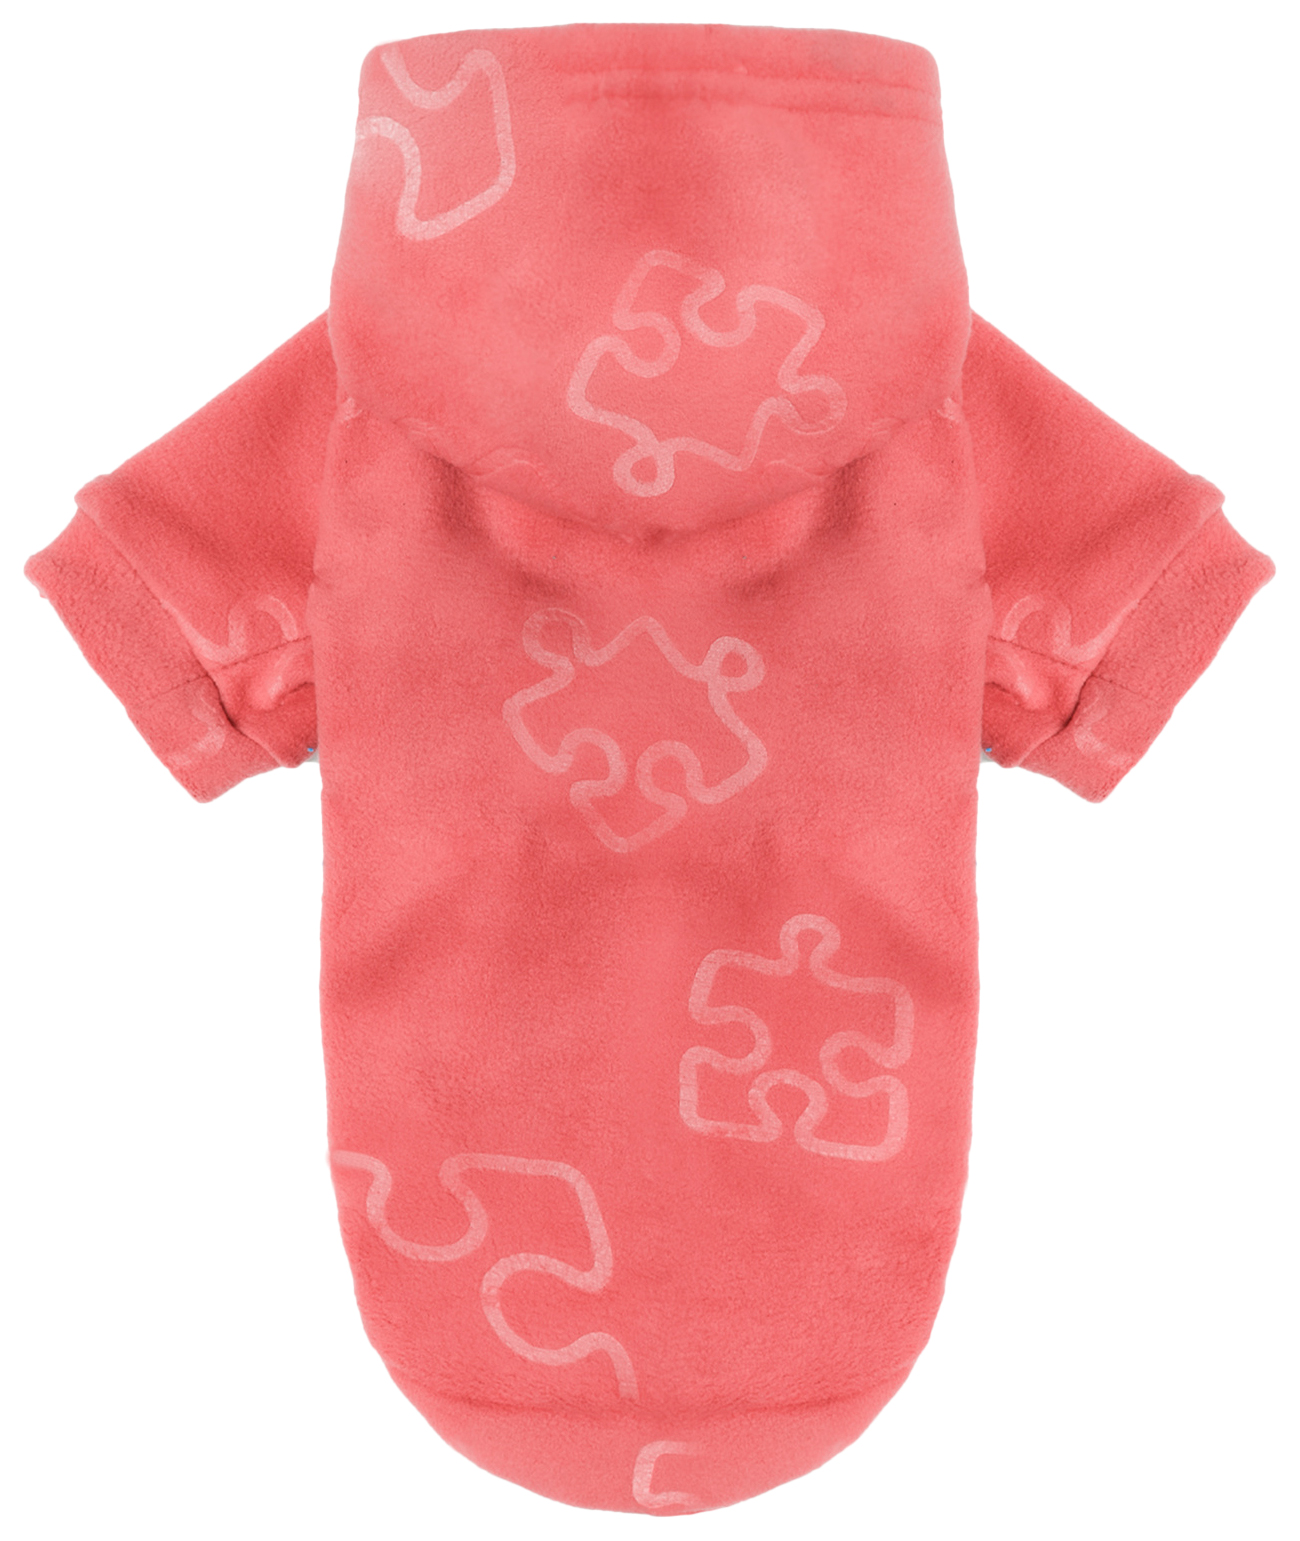 Толстовка для собак Yami-Yami одежда Пазлы, унисекс, розовый, L, длина спины 29 см